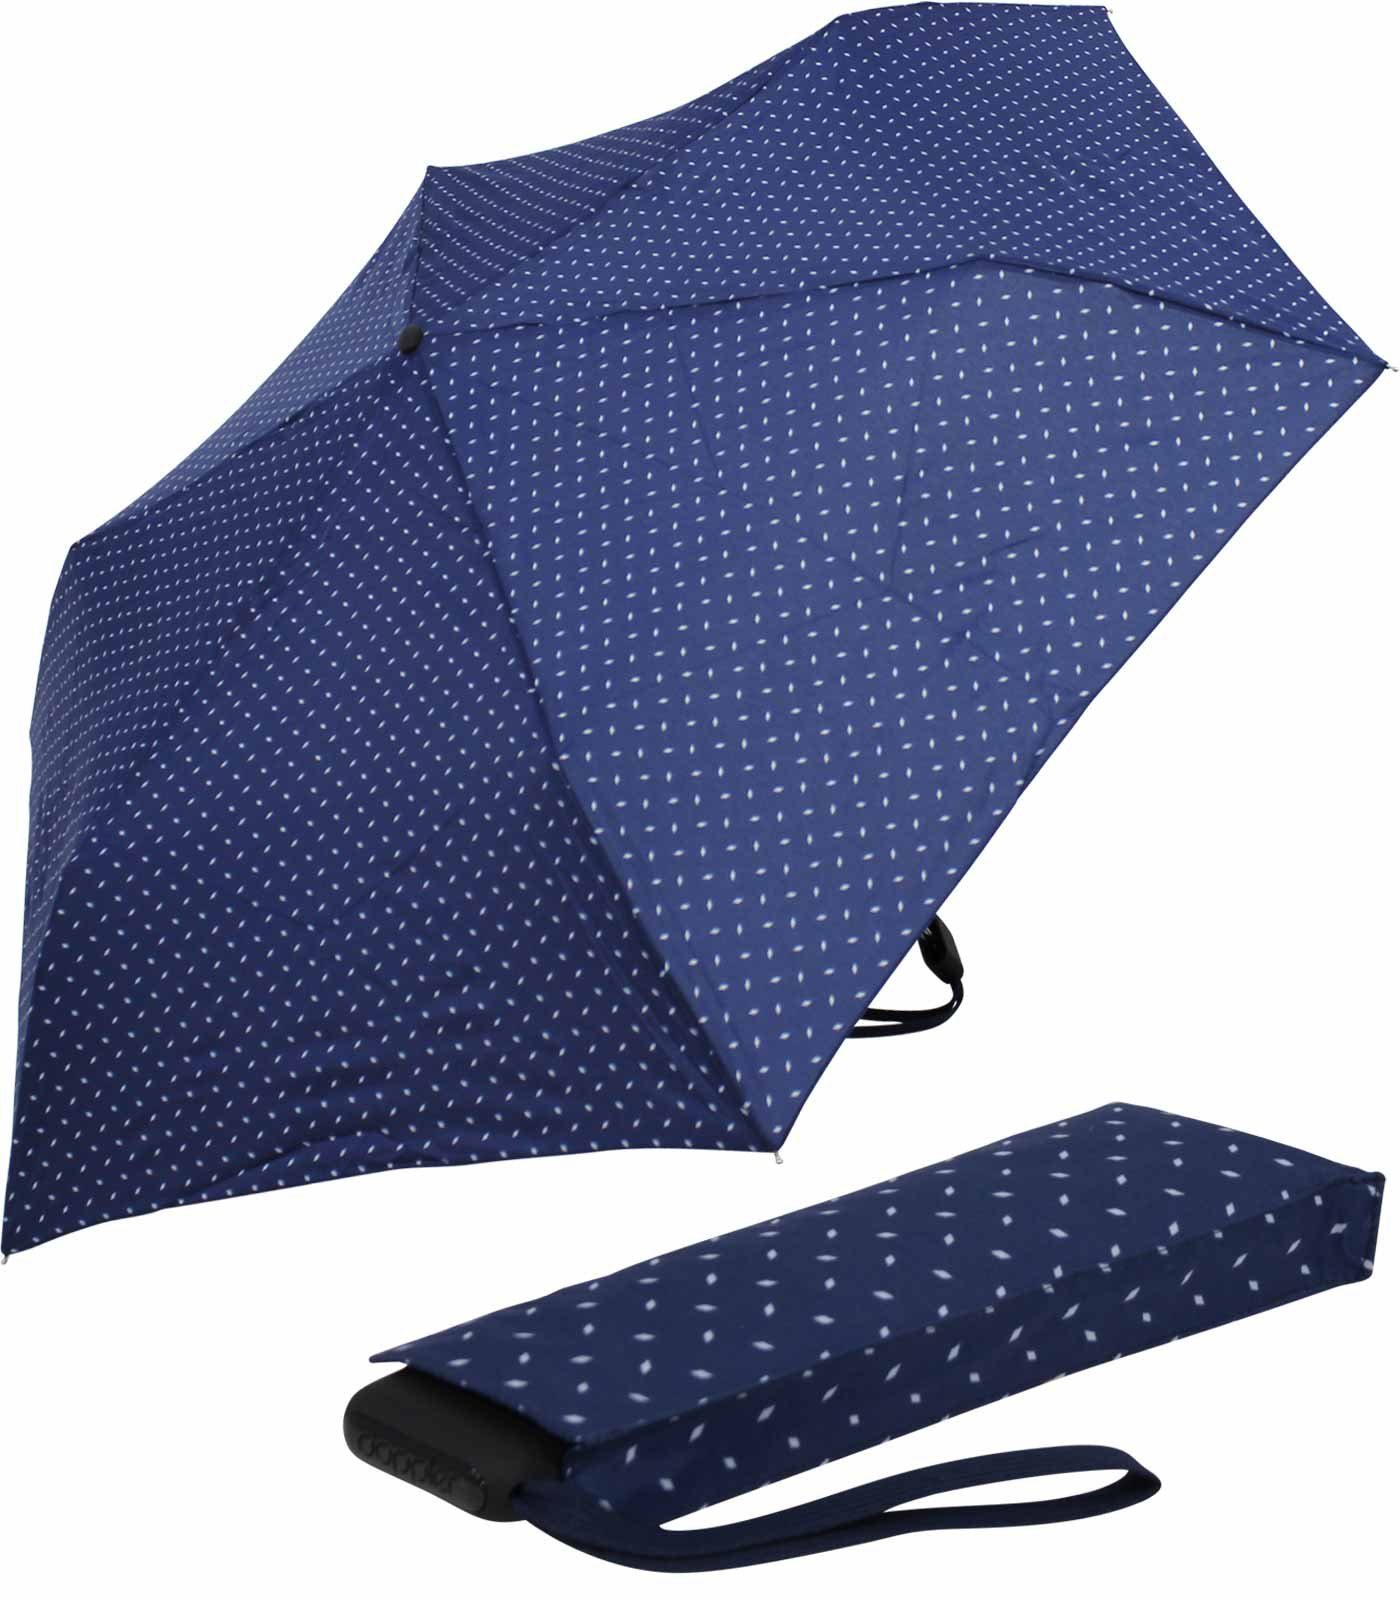 überall Platz Begleiter flacher ein jede doppler® treue Taschenregenschirm und für Tasche, dieser blau findet leichter Schirm